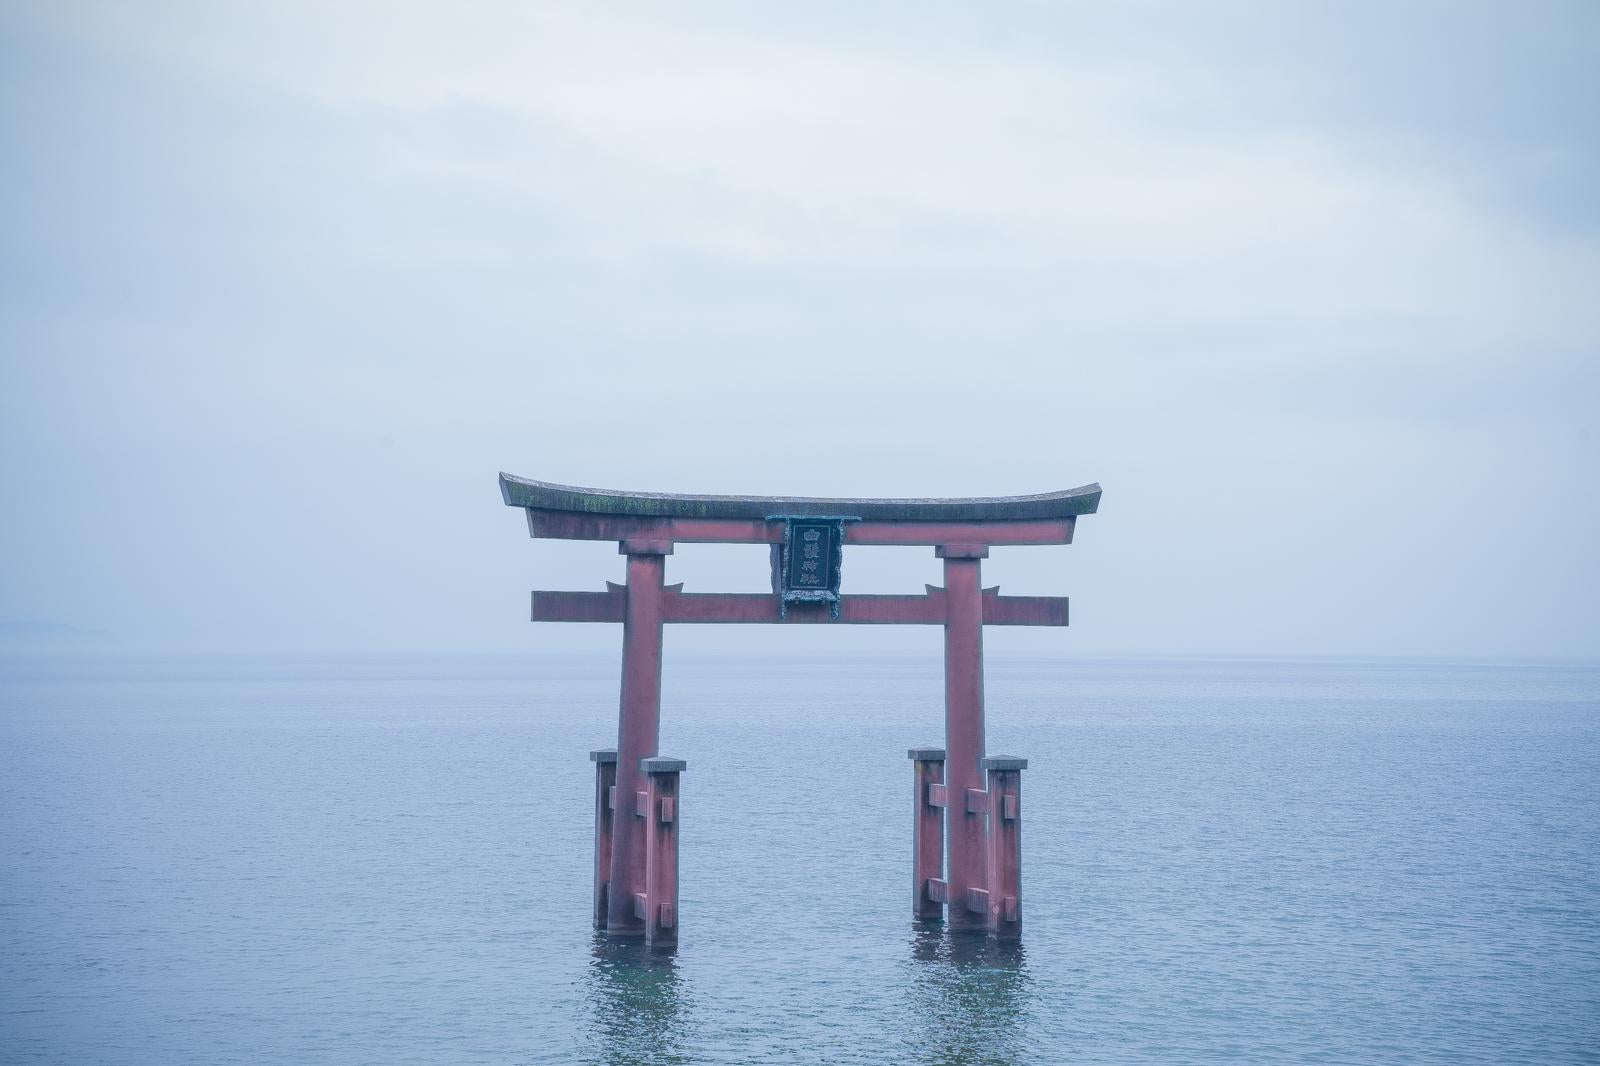 「滋賀県白髭神社にある琵琶湖に浮かぶ鳥居」の写真